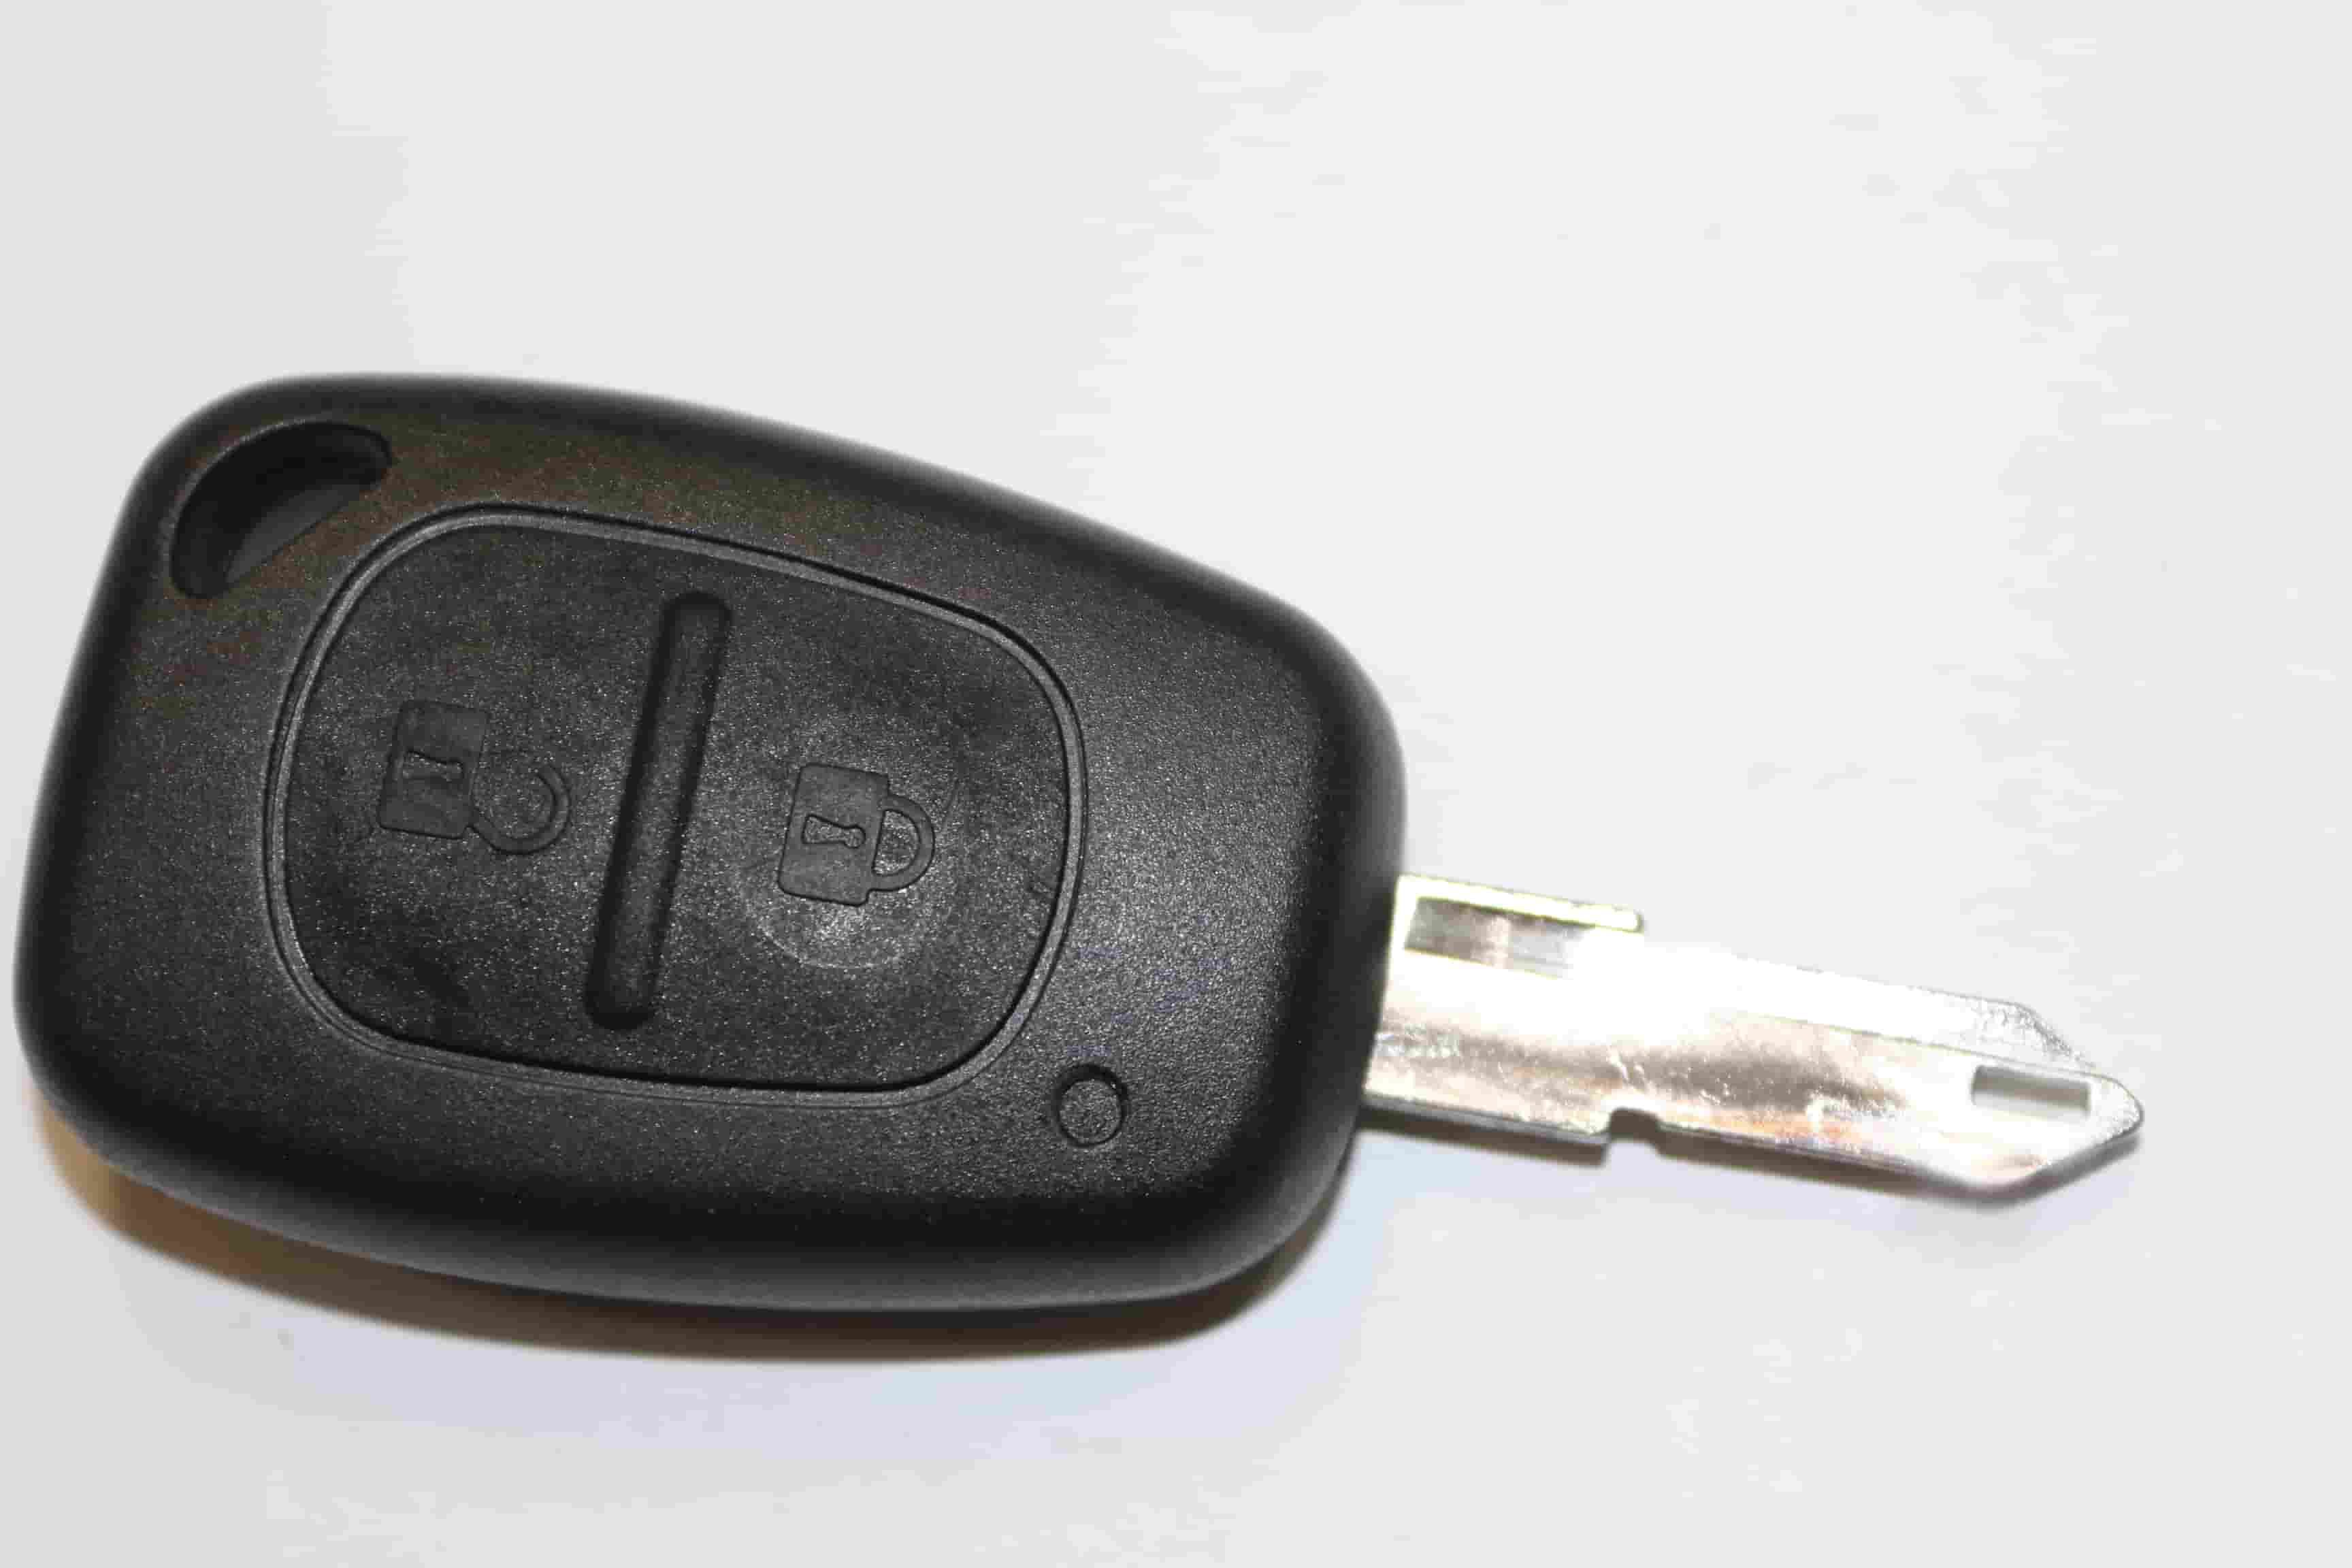 Ключ зажигания Autokey, заготовка для Renault, дист. в сборе (2 кнопки)